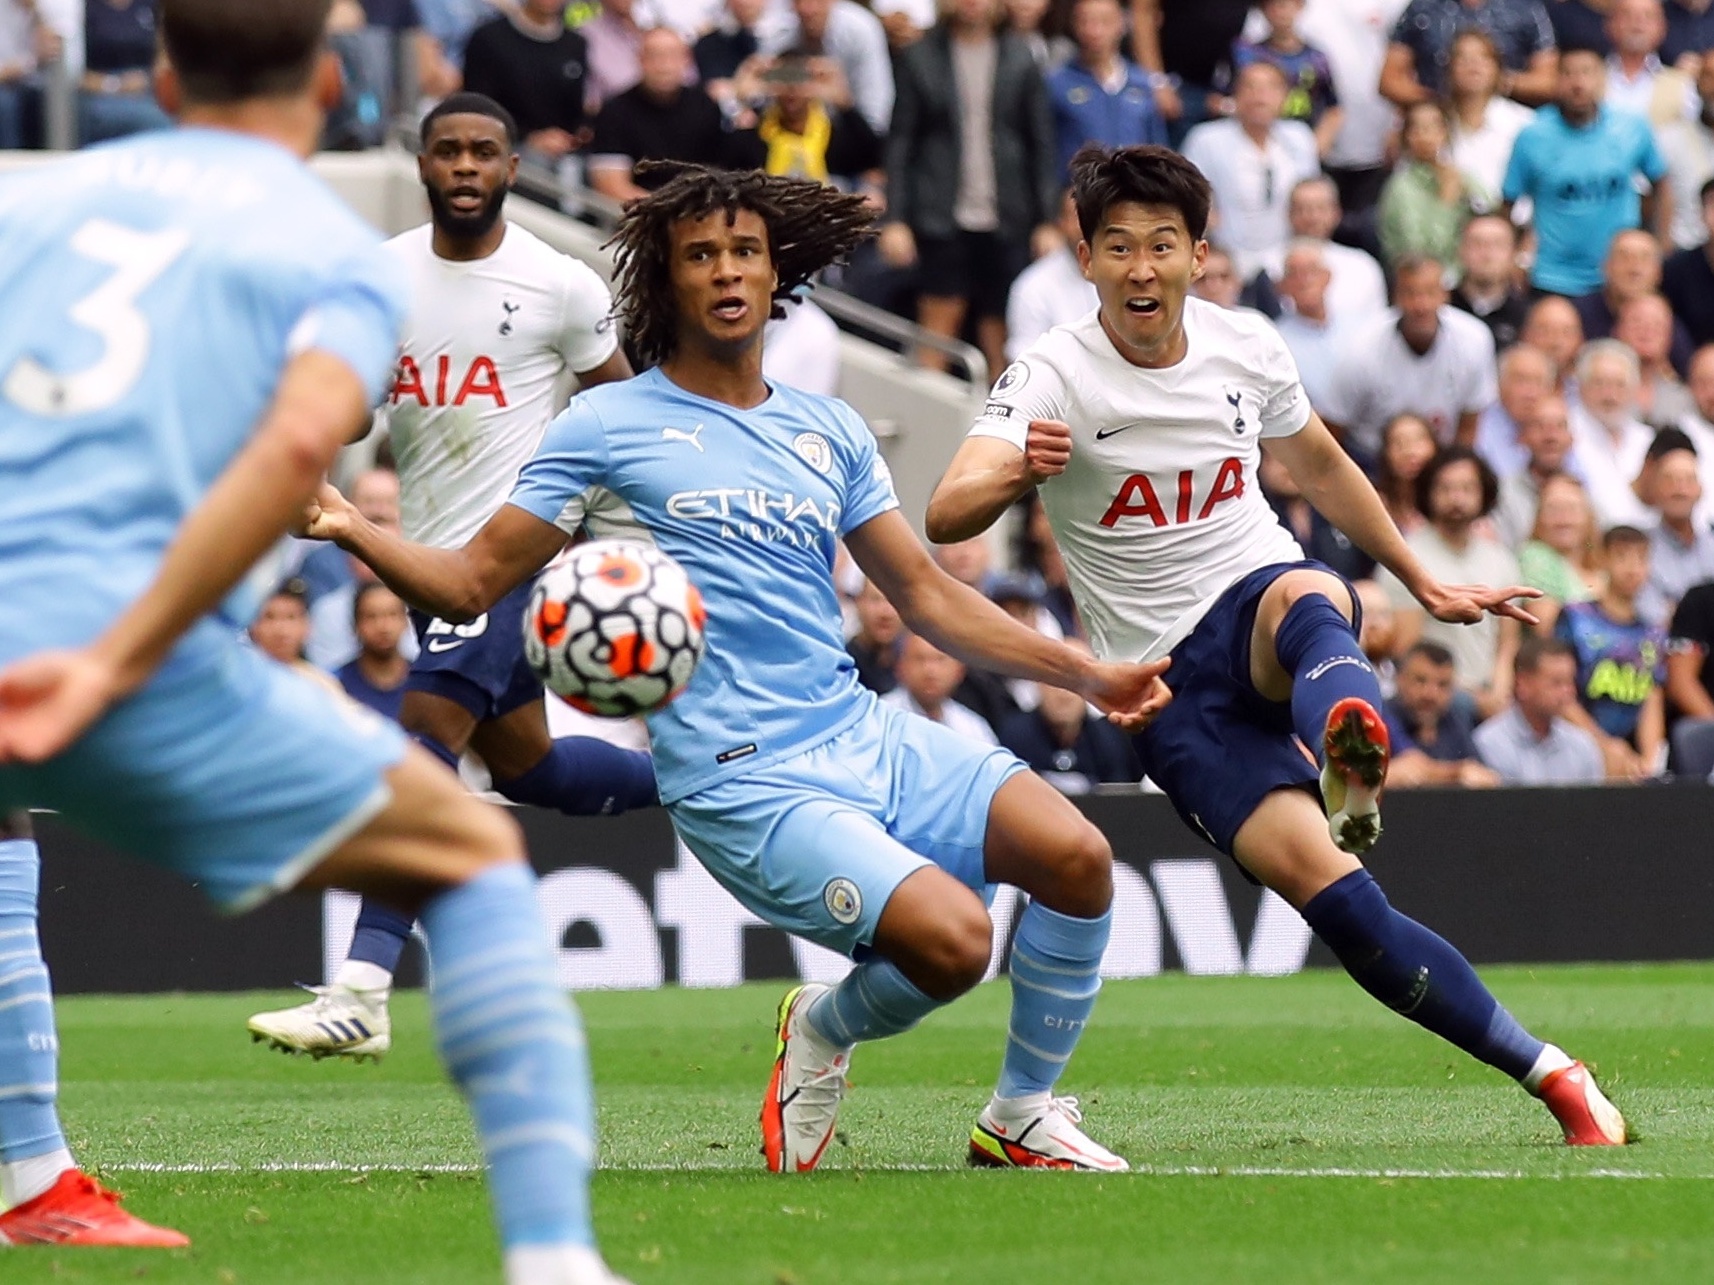 Manchester City cede empate ao Tottenham e cai para 3º no Campeonato Inglês  - Rádio Itatiaia